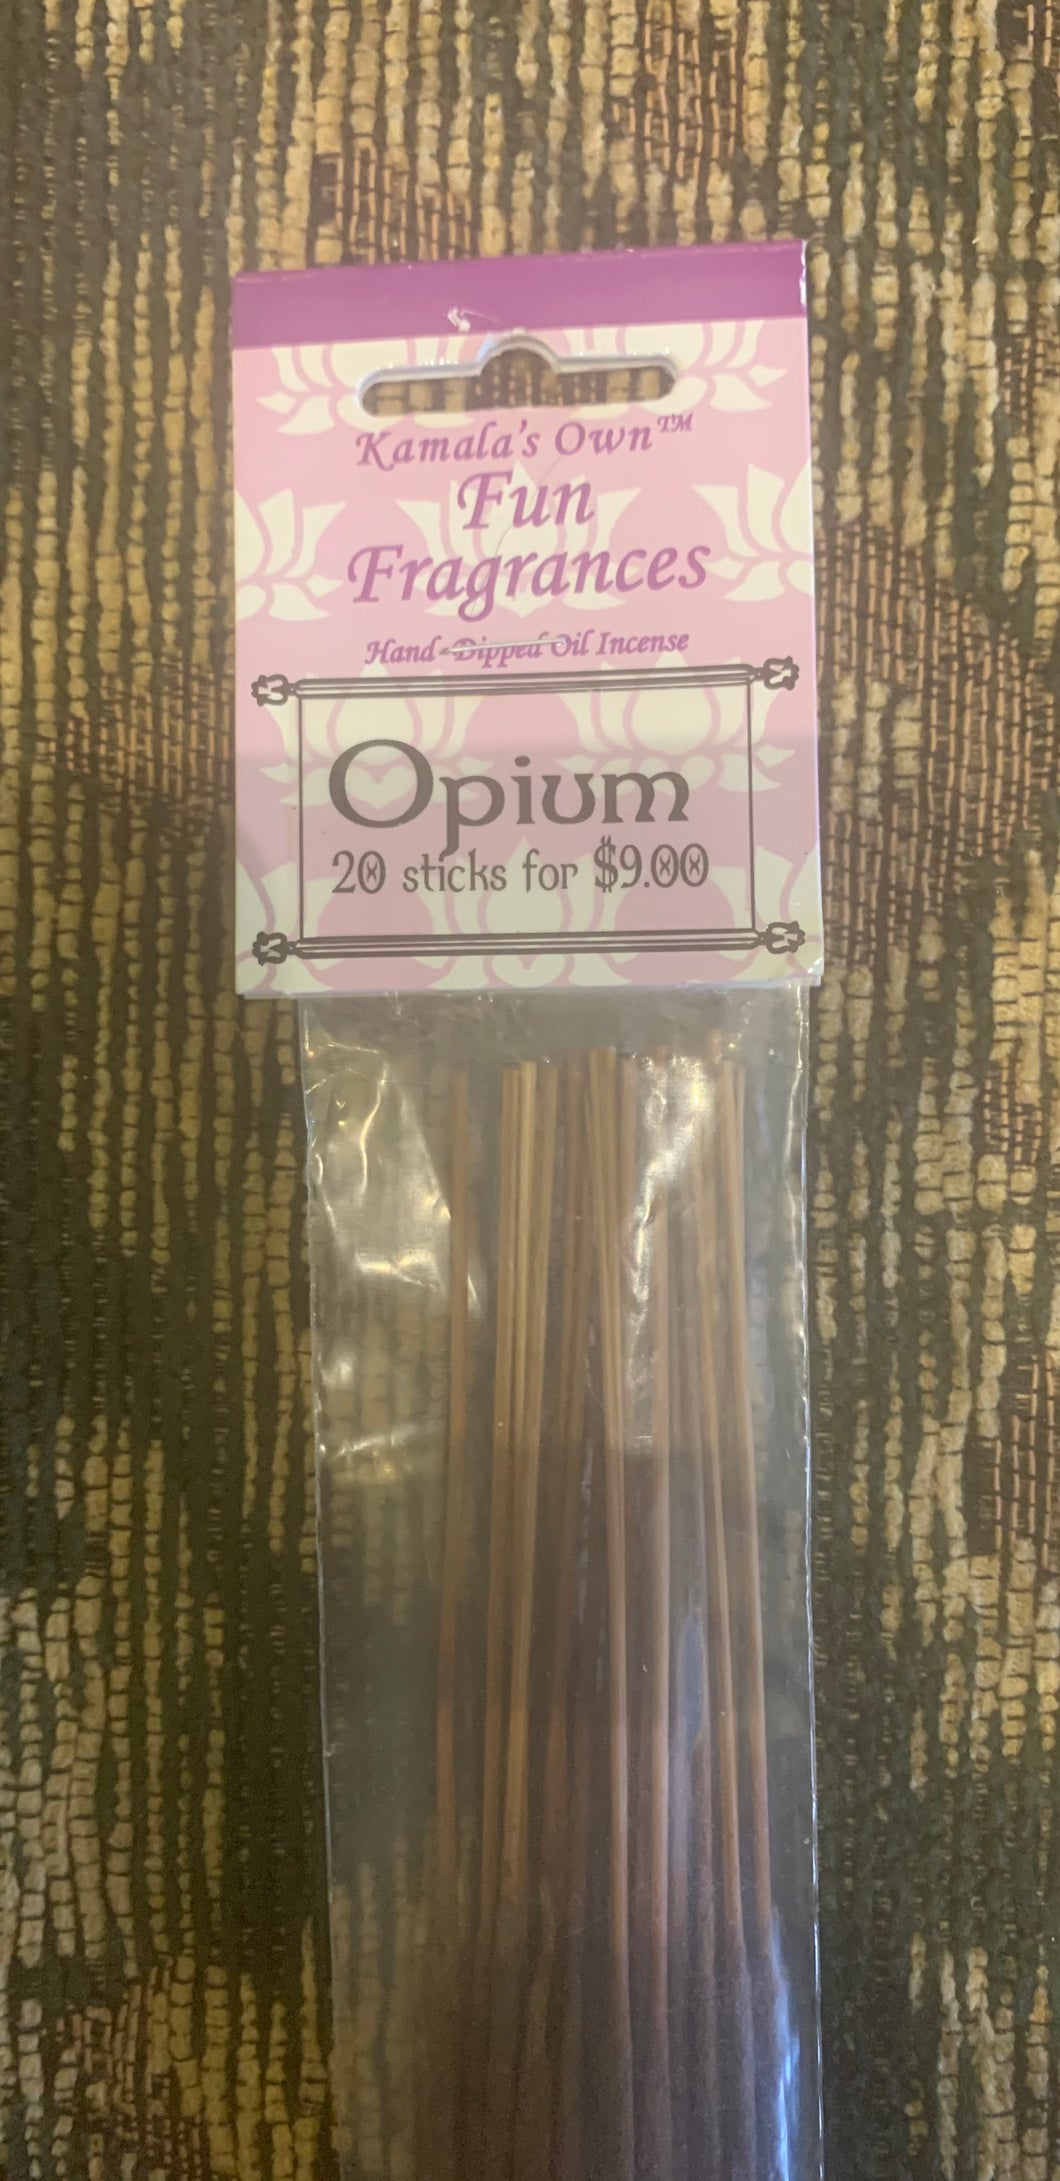 Opium sticks